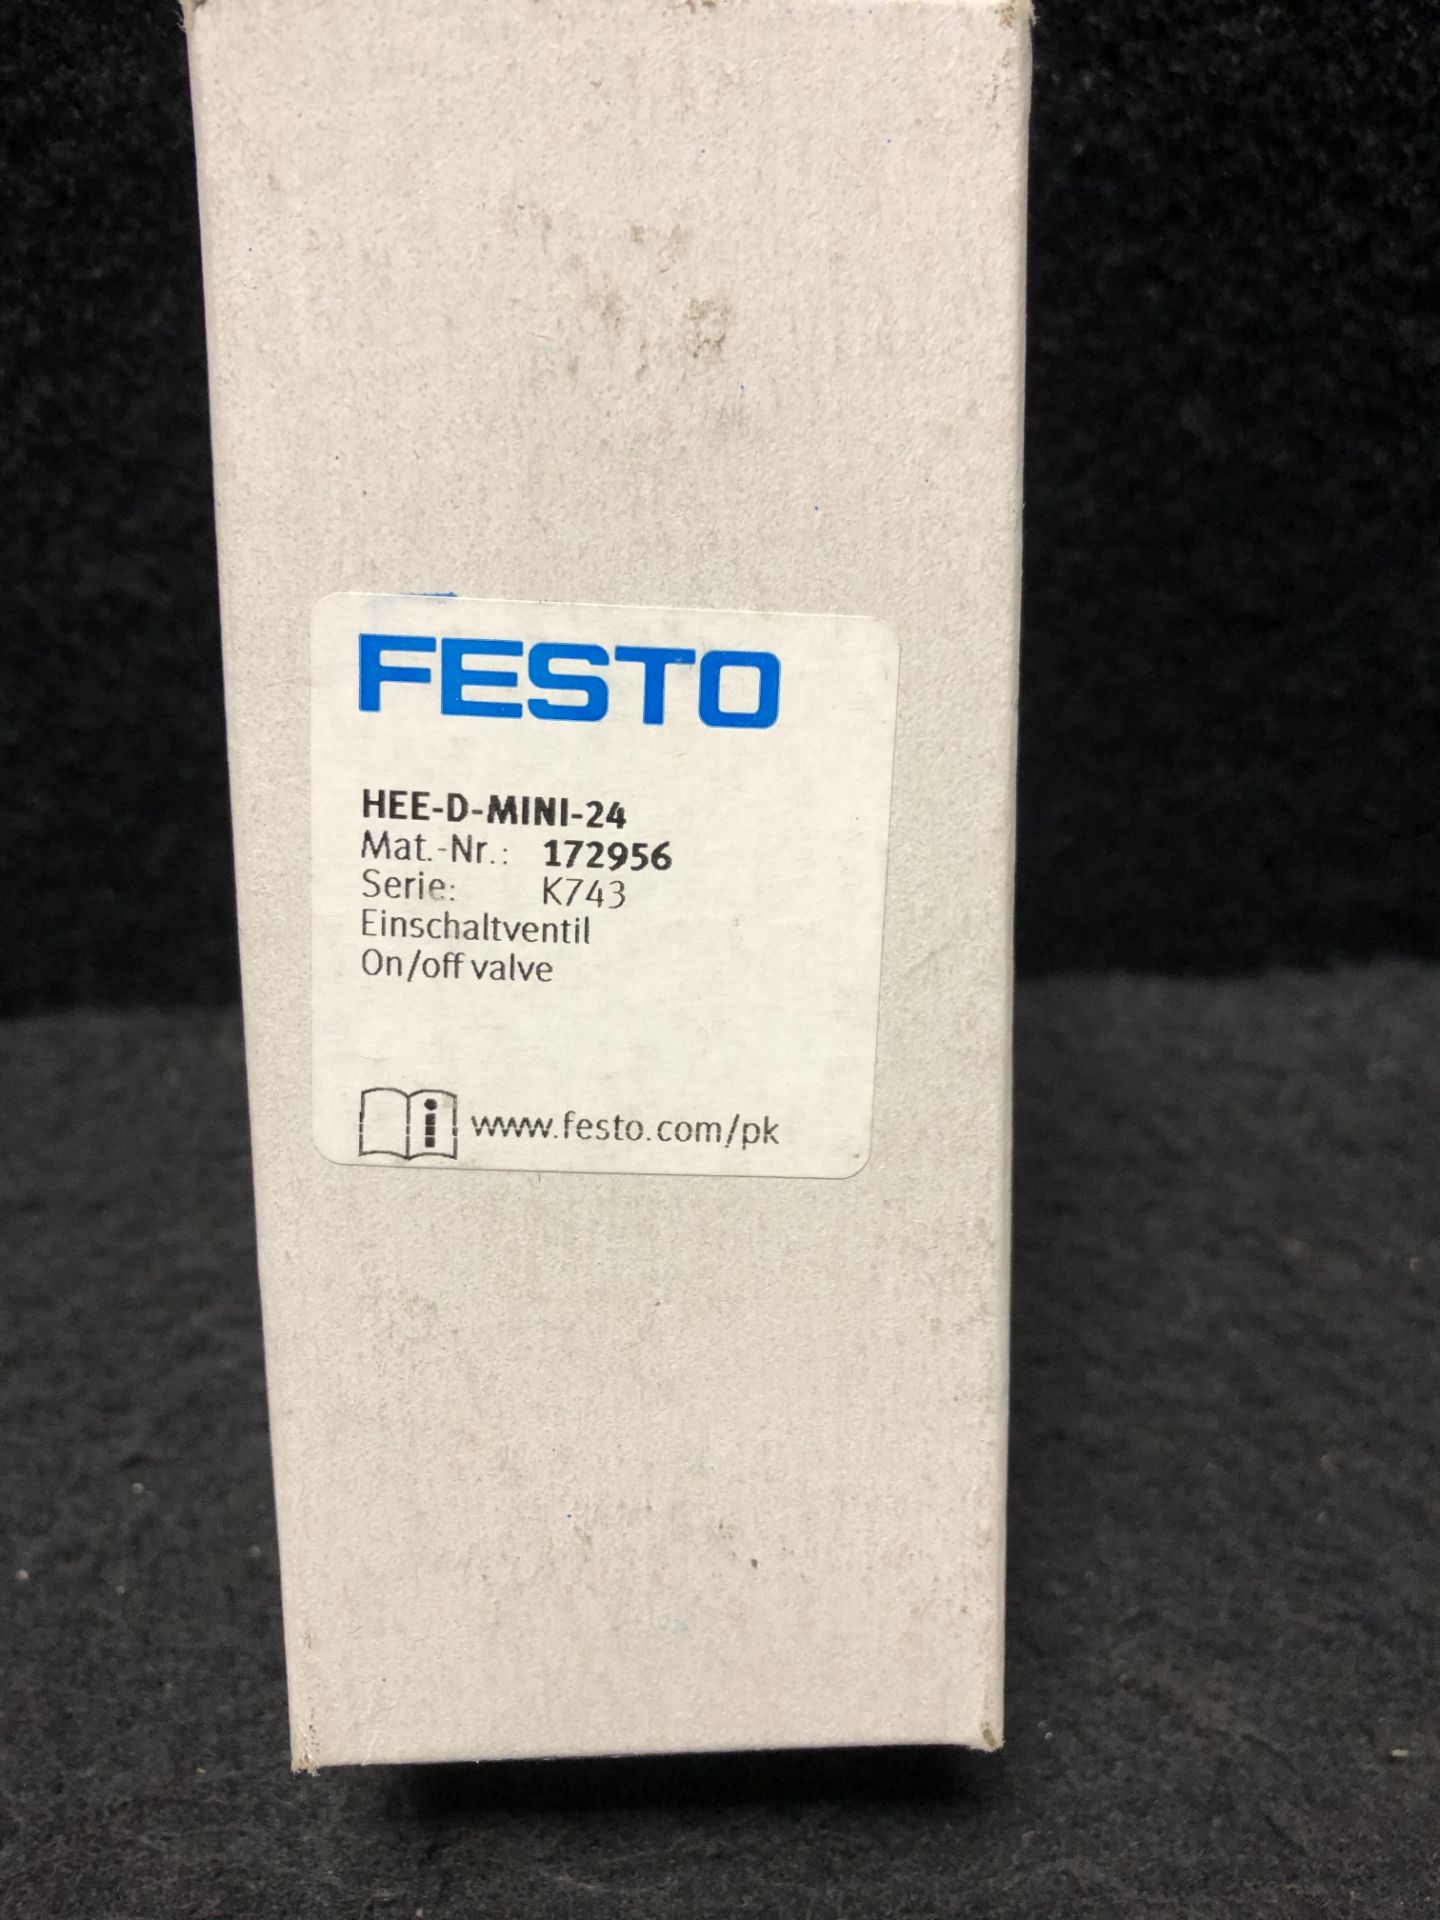 NEW IN BOX - LOT OF 3 - FESTO HEE-D-MINI-24 VALVE, 36.2-232.0 PSI, 24VDC - Image 4 of 4